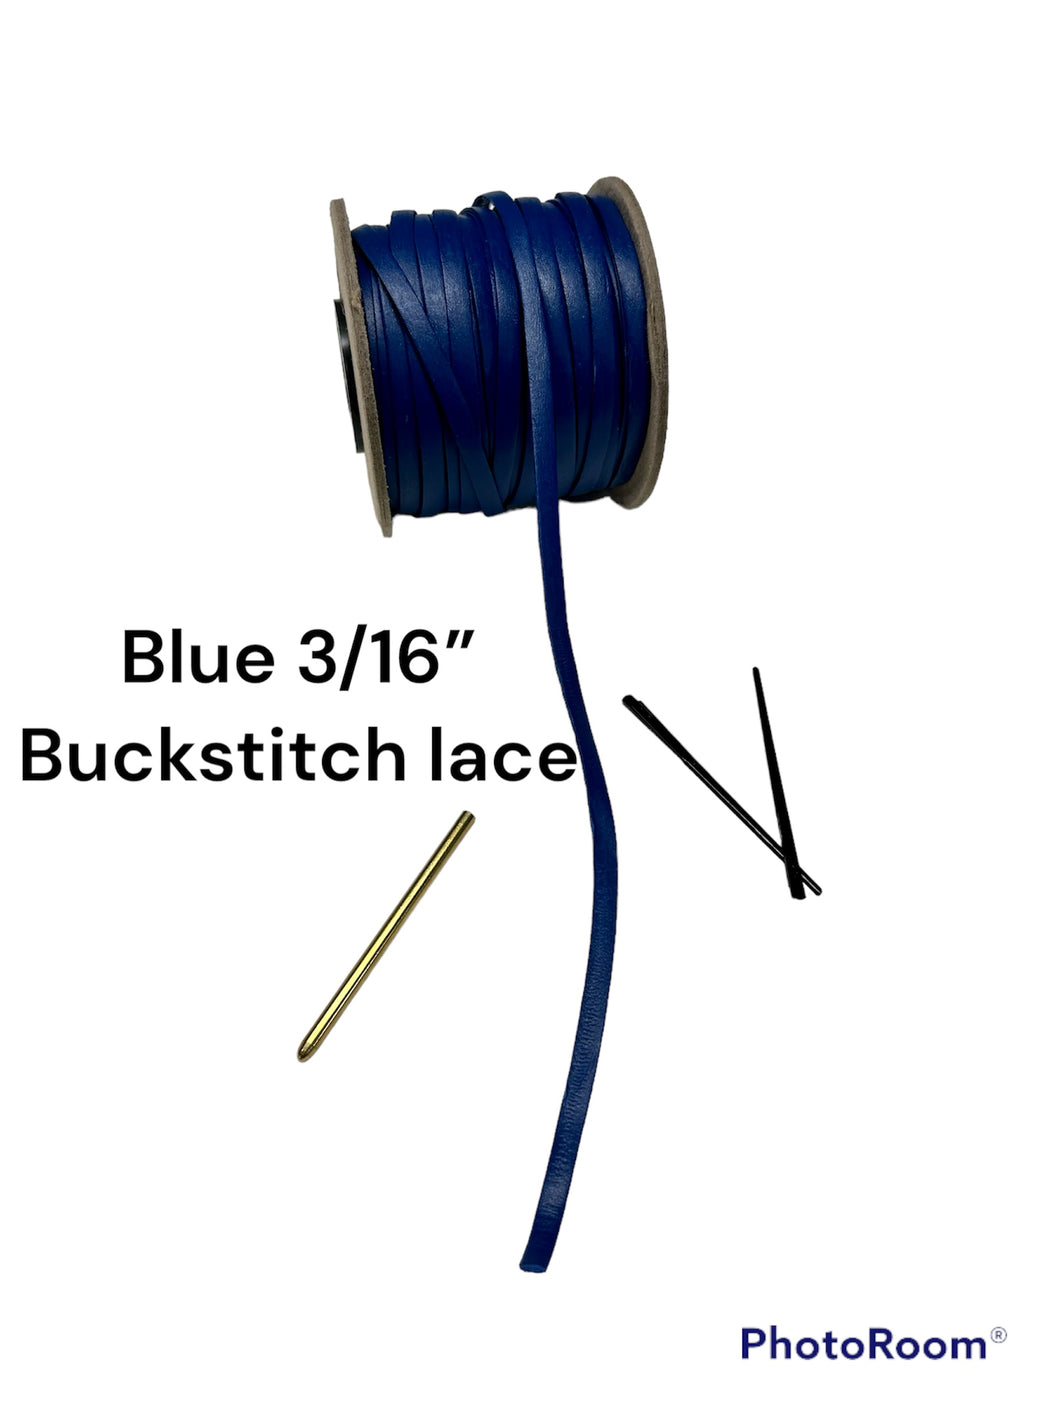 Blue 3/16” Buckstitch lace